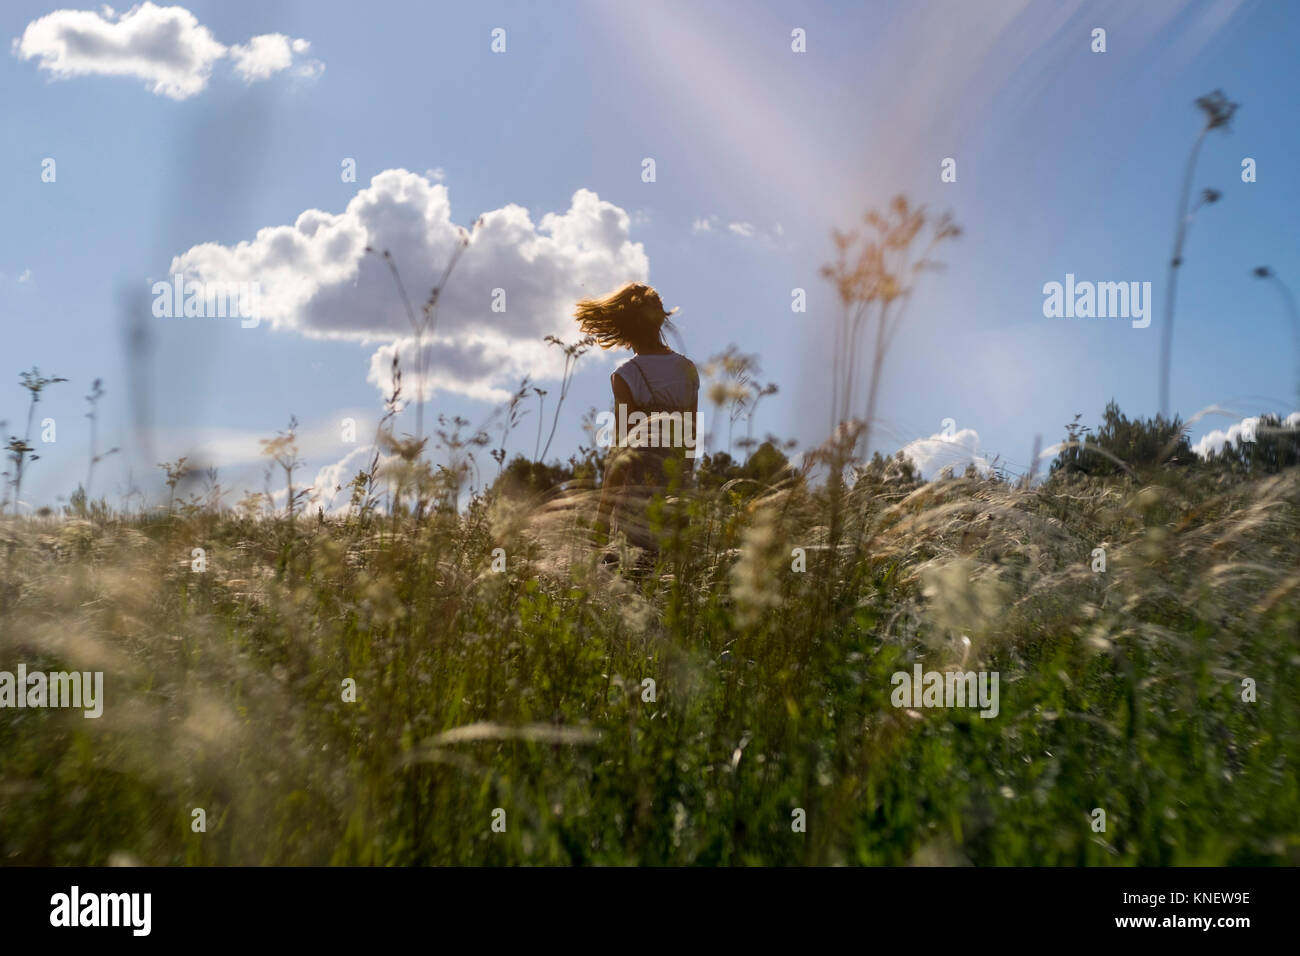 Woman standing in field, close-up, les cheveux au vent, vue arrière, Ural, Chelyabinsk, Russie, Europe Banque D'Images